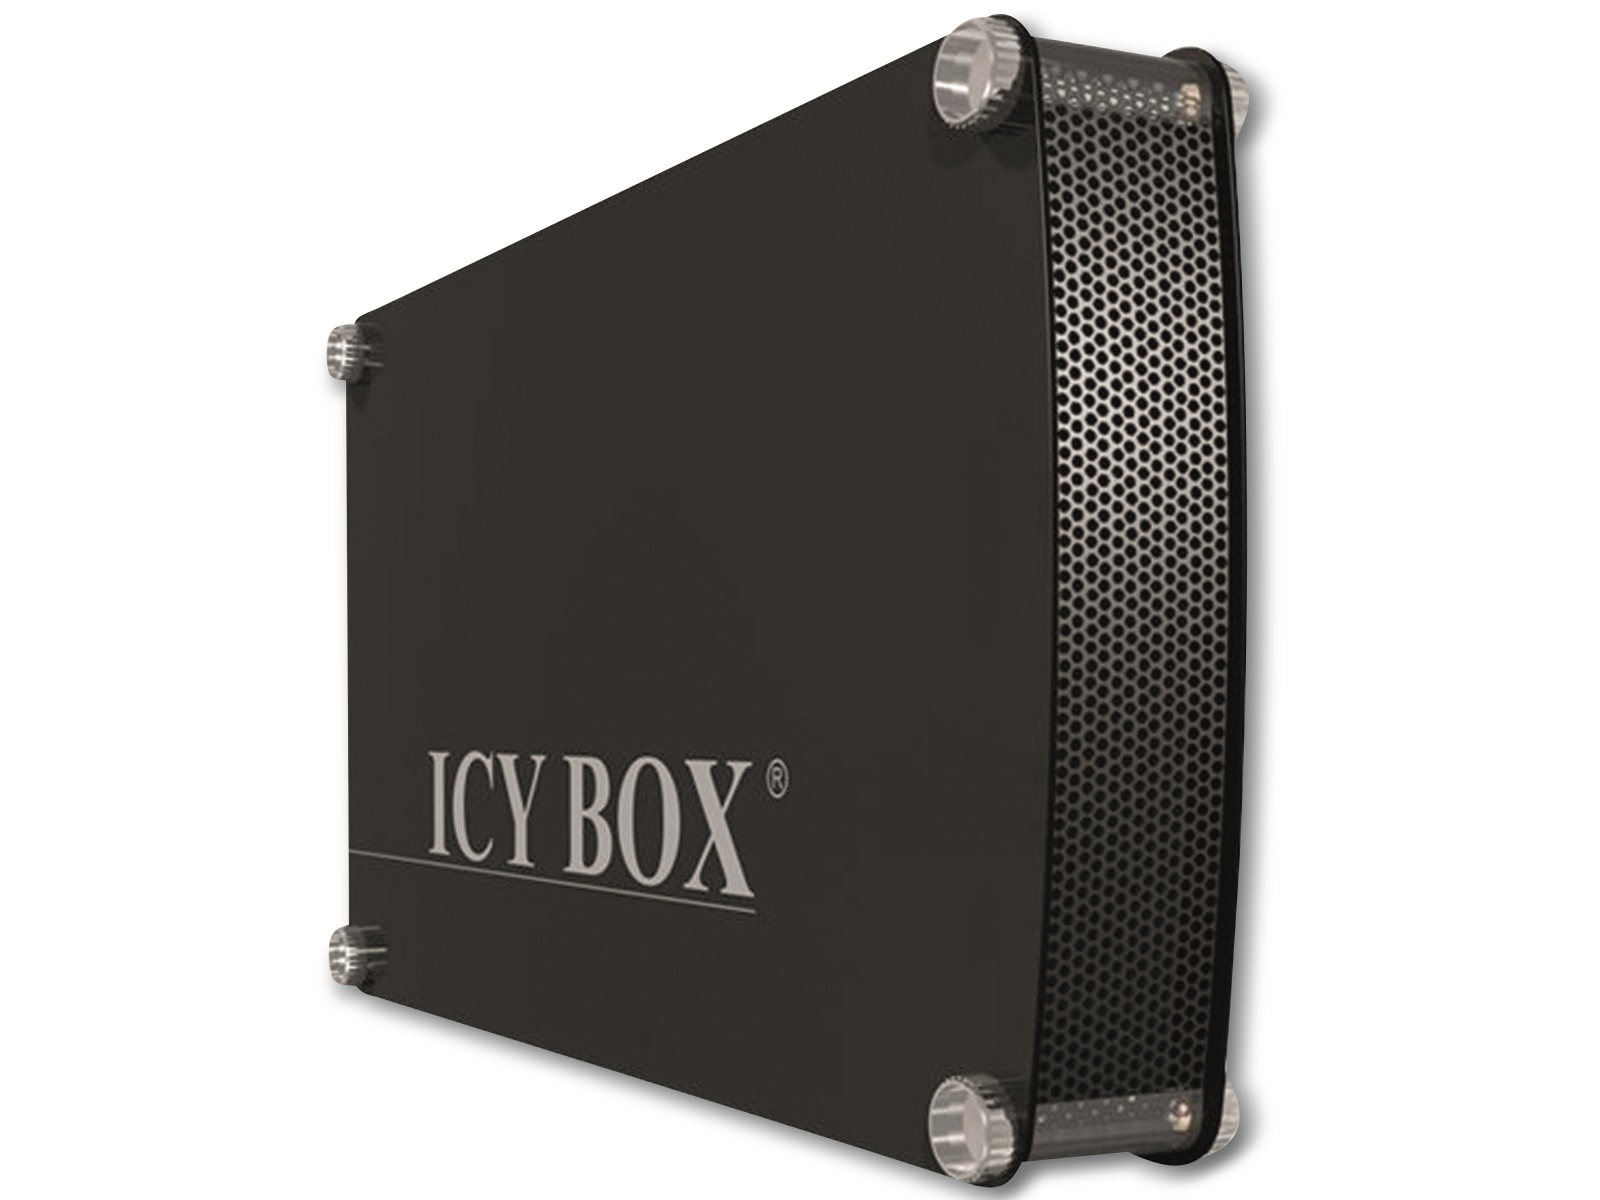 ICY BOX Festplattengehäuse IB-351StU3-B, 3,5" SATA zu USB 3.0, Aluminium